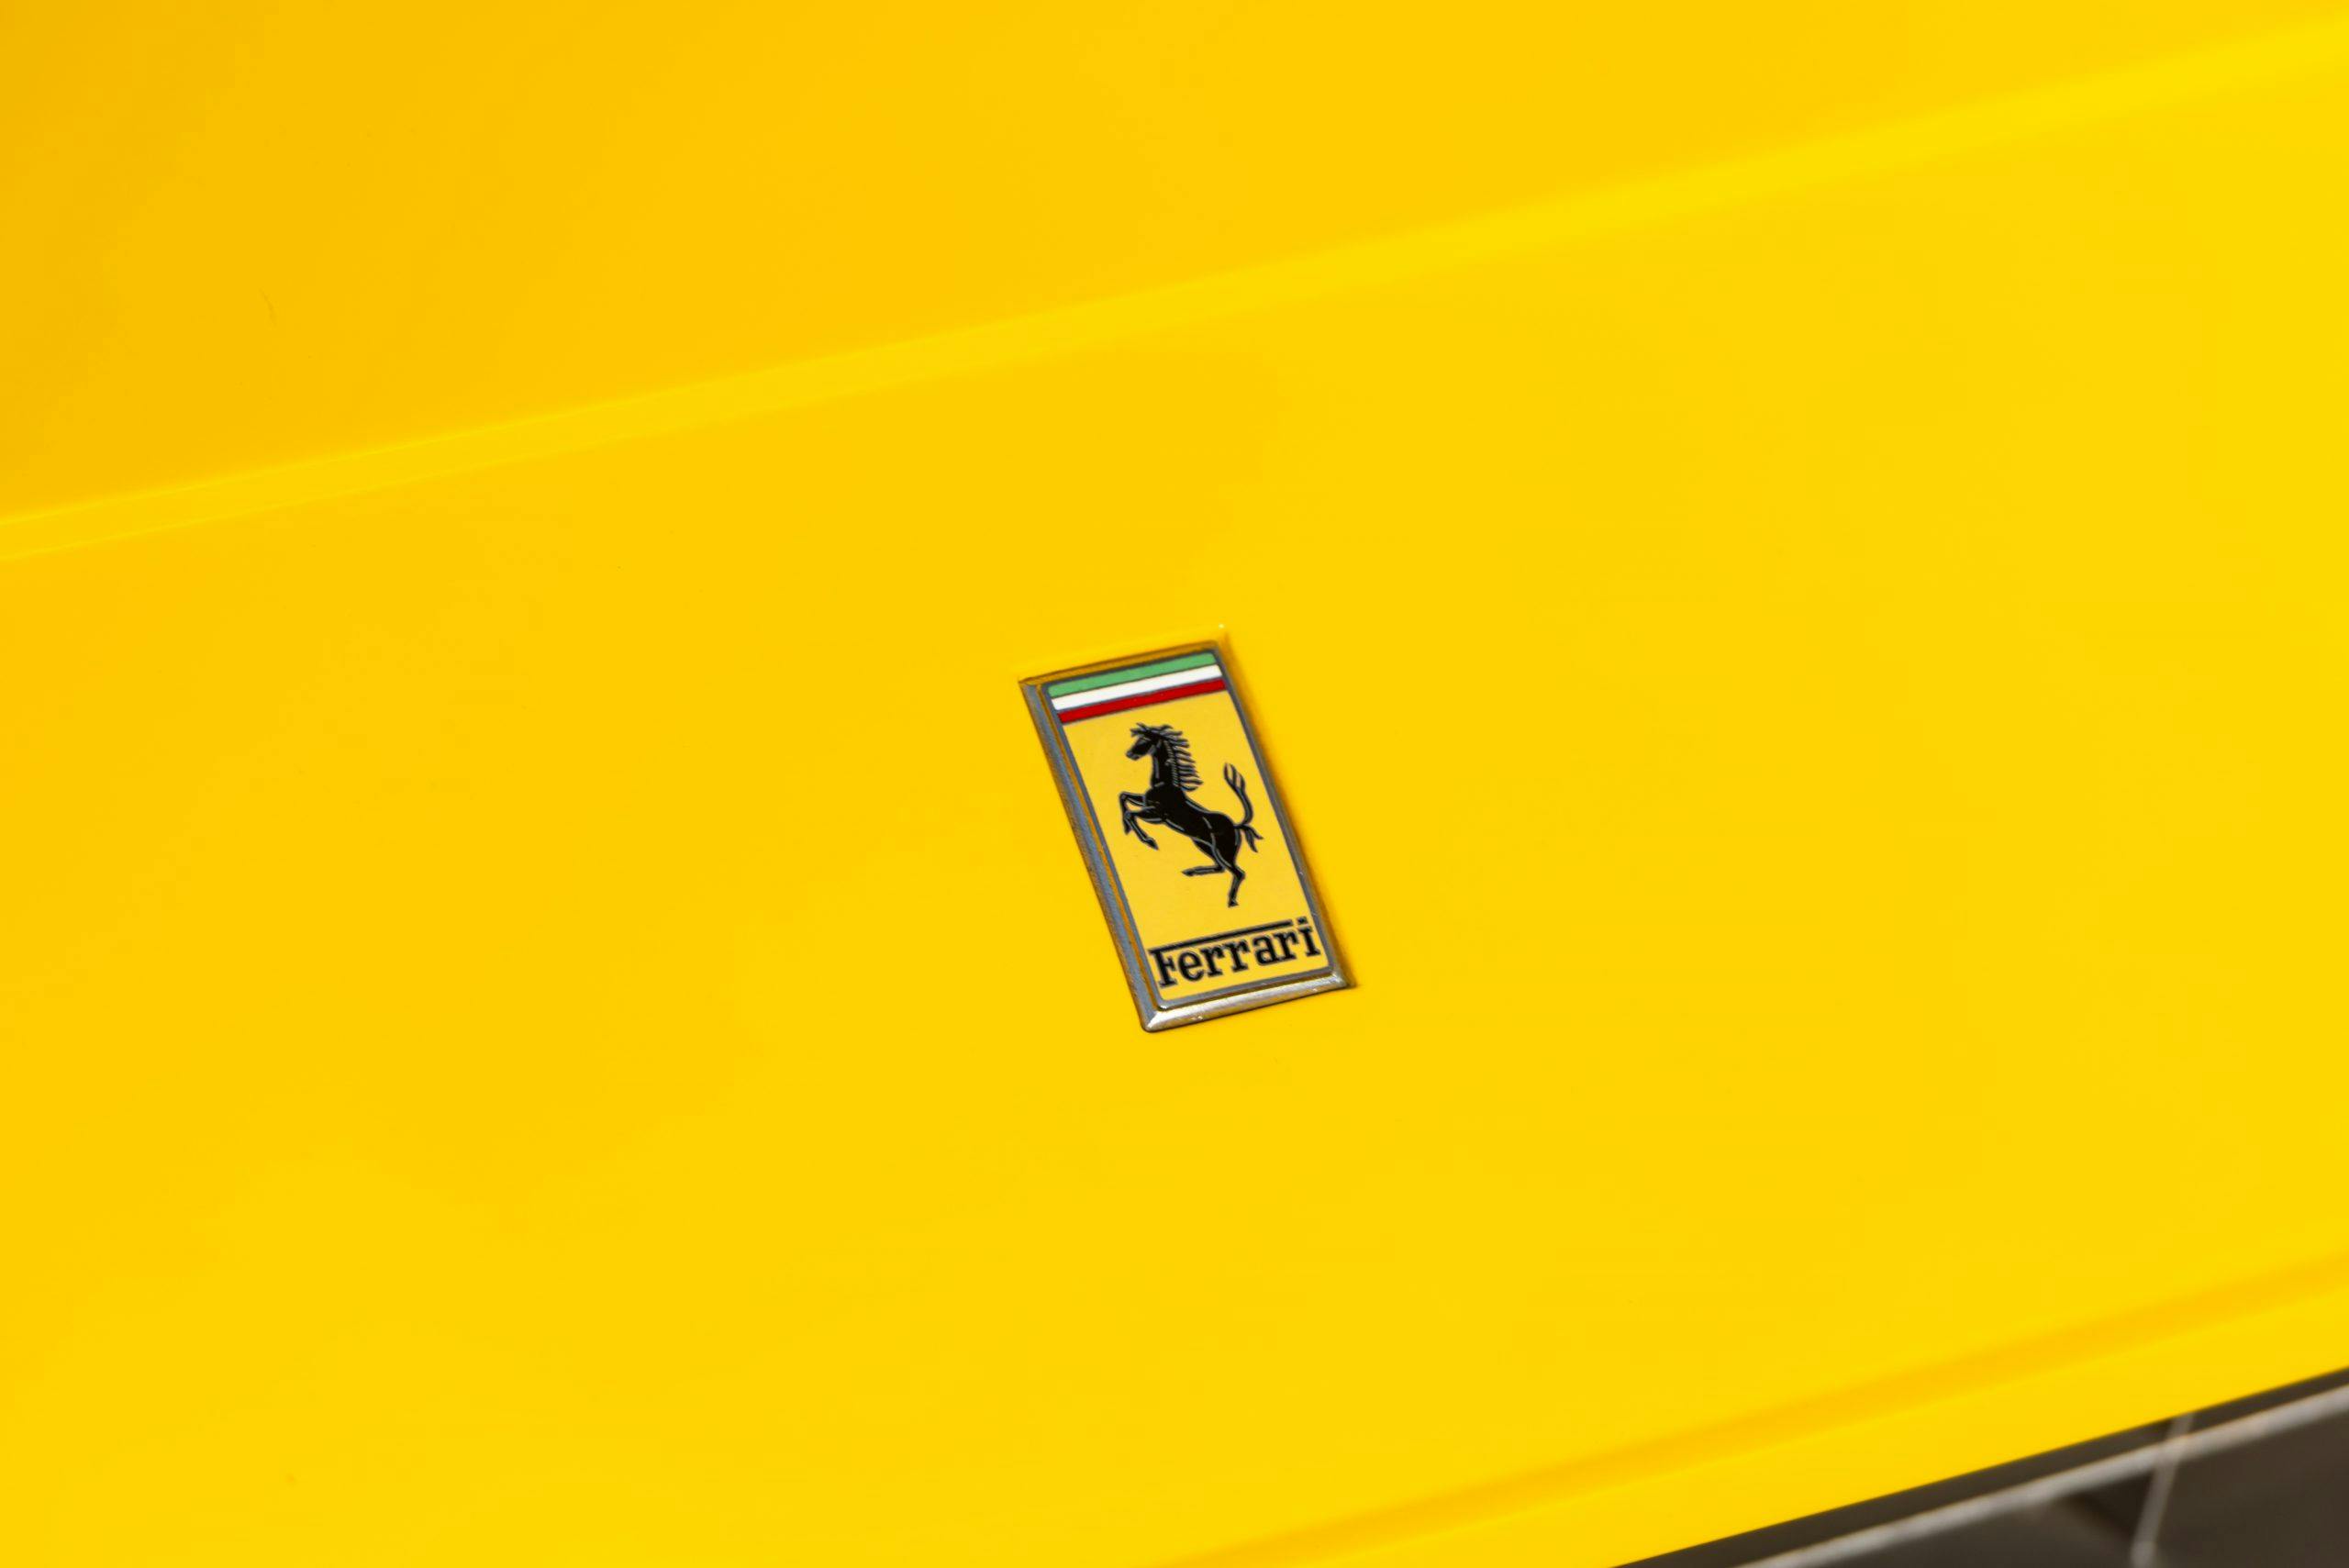 1971 Ferrari 365 emblem